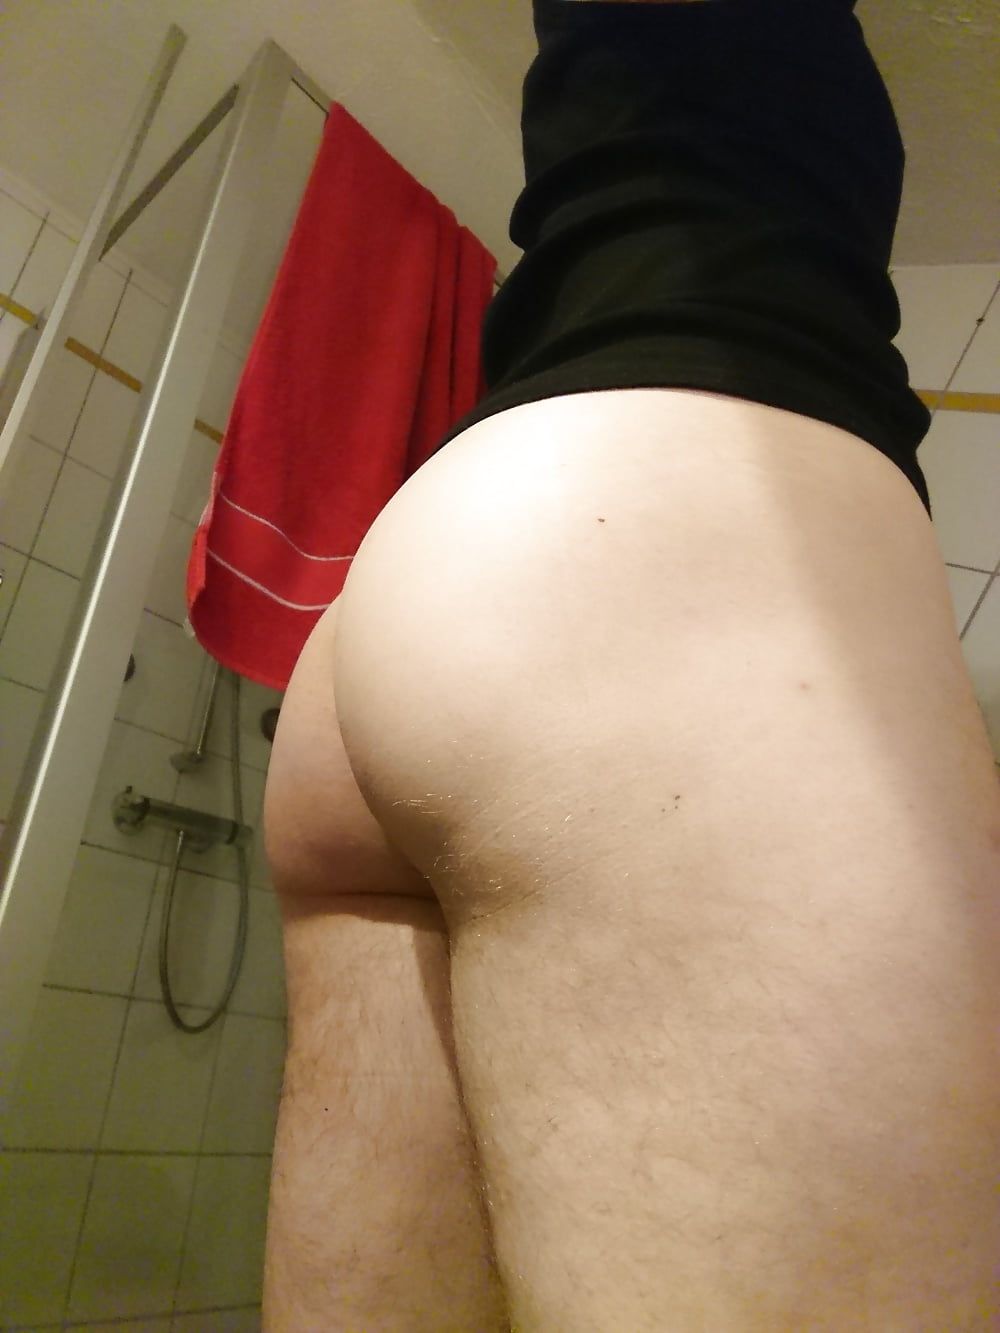 My ass! 